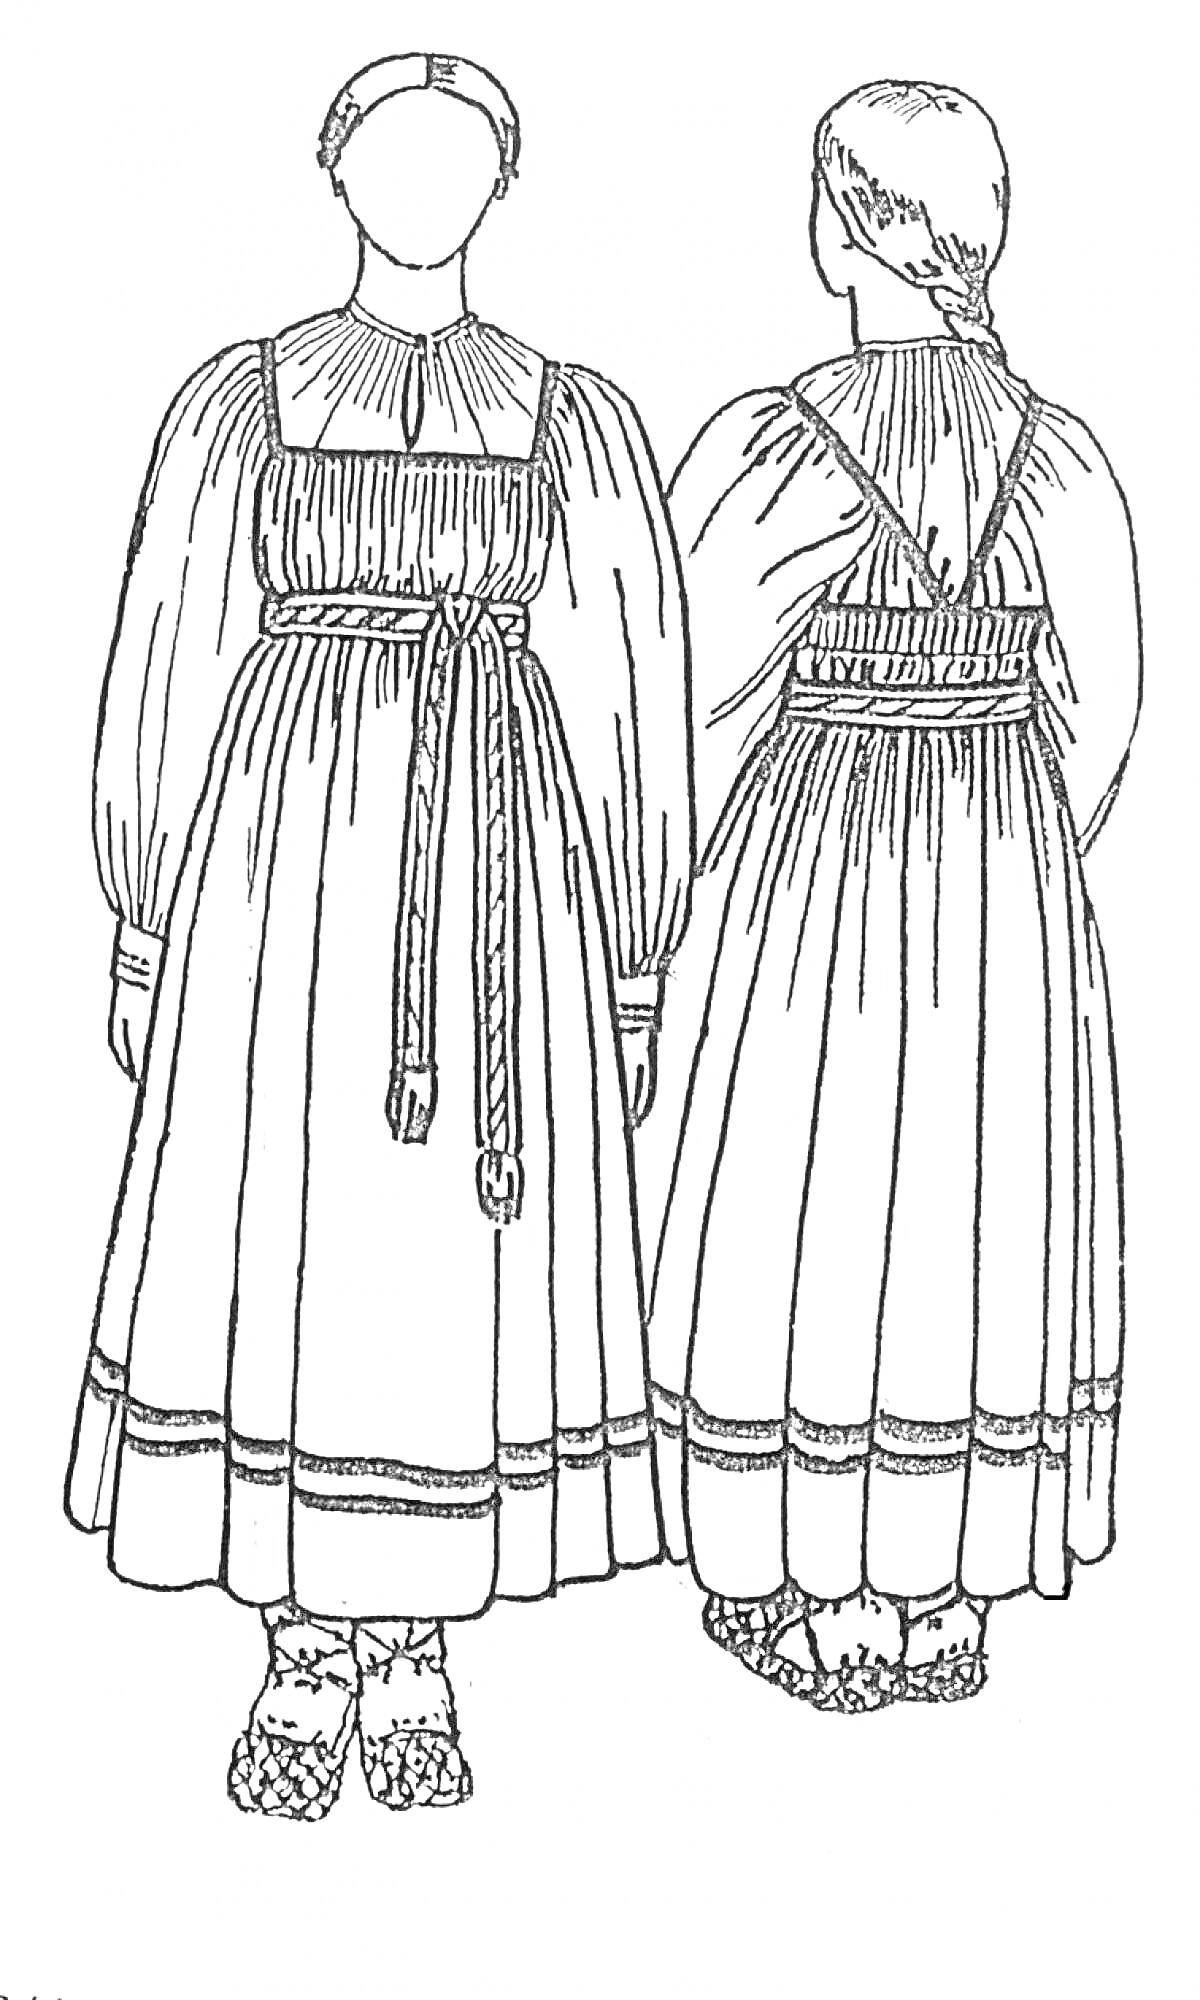 Раскраска Русский народный женский костюм с сарафаном и рубахой, поясом и головным убором, украшенные орнаментом на подоле.